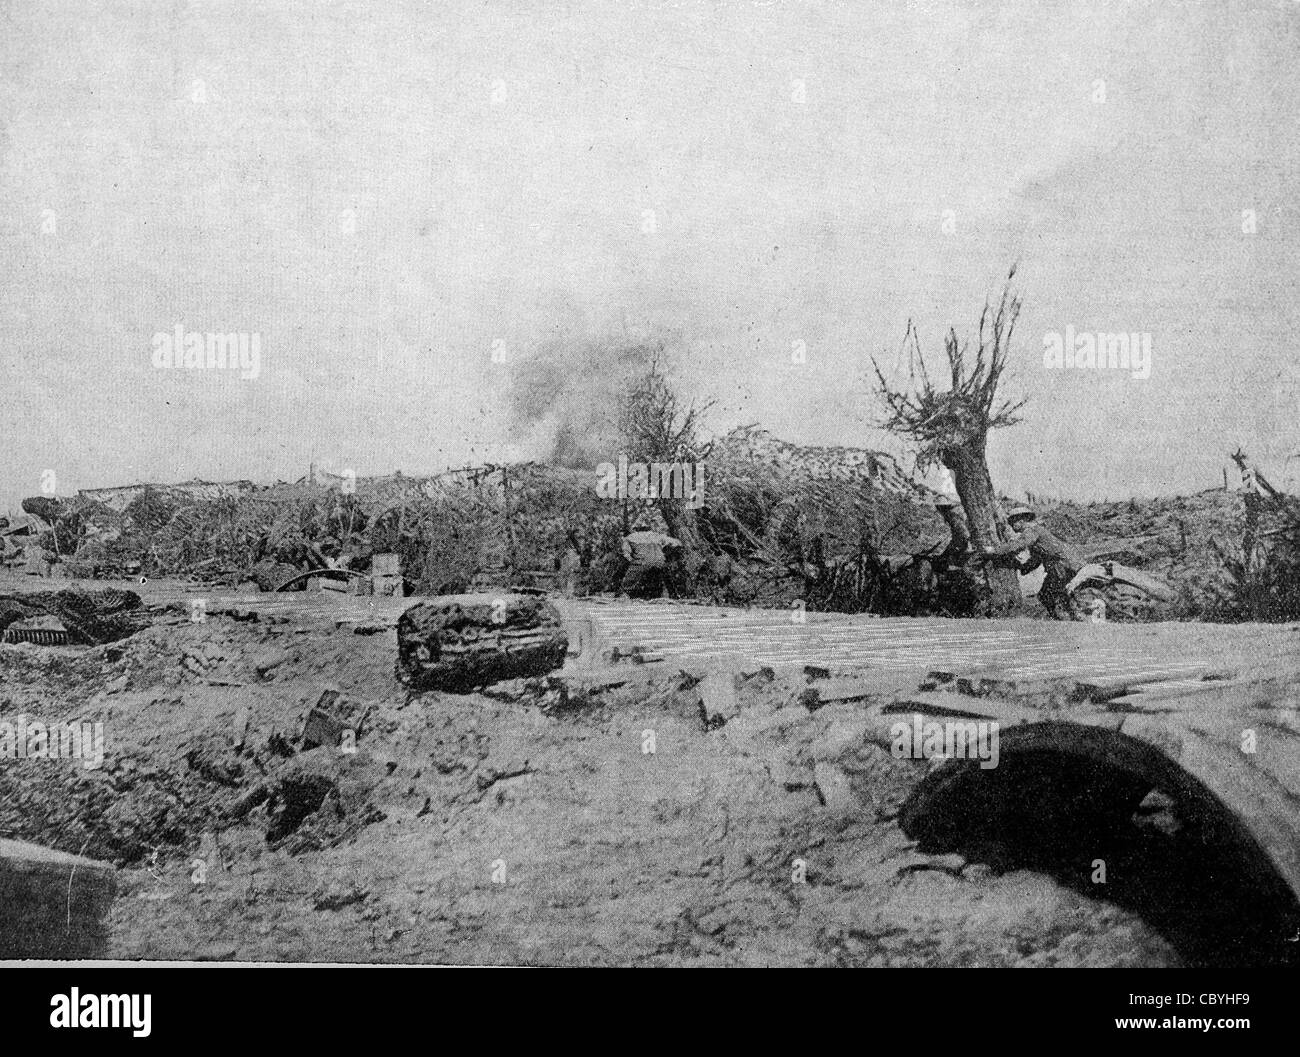 "Gunners" fliegenden Bits des Shell - nahen etwas über einen Batterie-Standpunkt - Flandern Front - Weltkrieg ausweichen Stockfoto